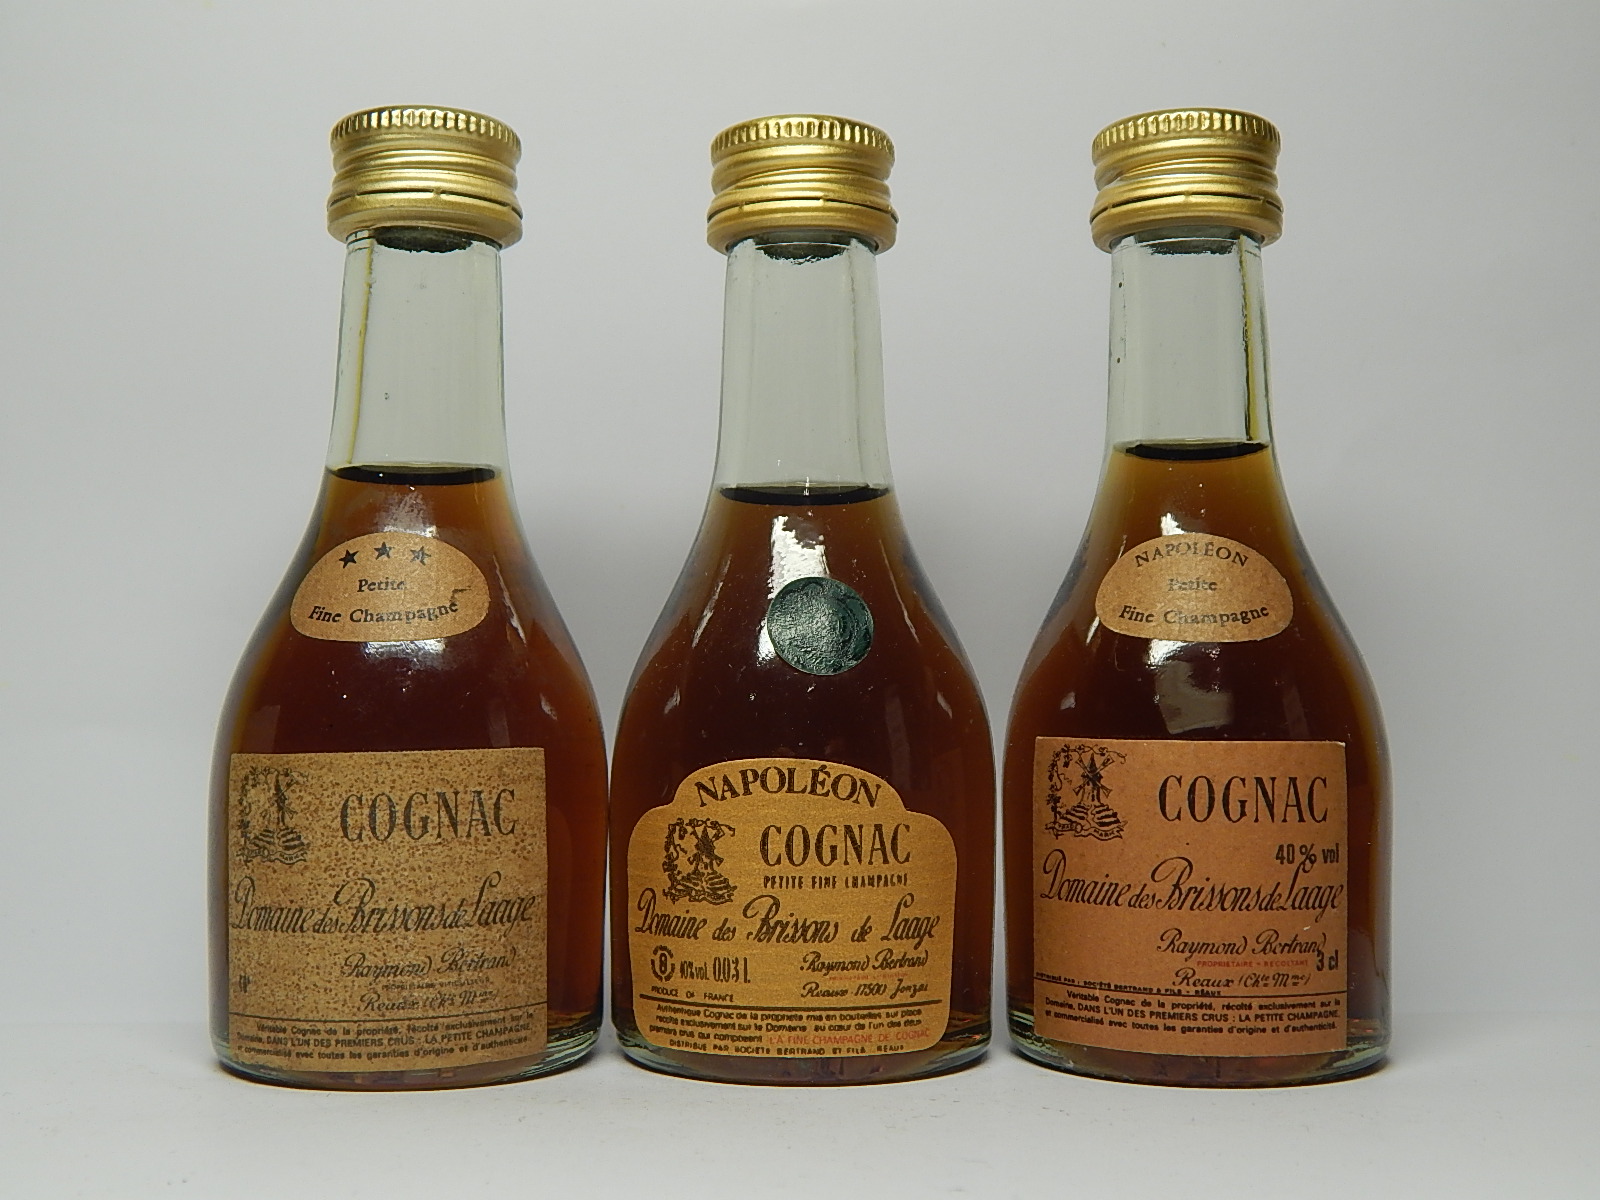 DOMAINE des BRISSONS de LAAGE *** - Napoleon - Napoleon Petite Fine Champagne Cognac 